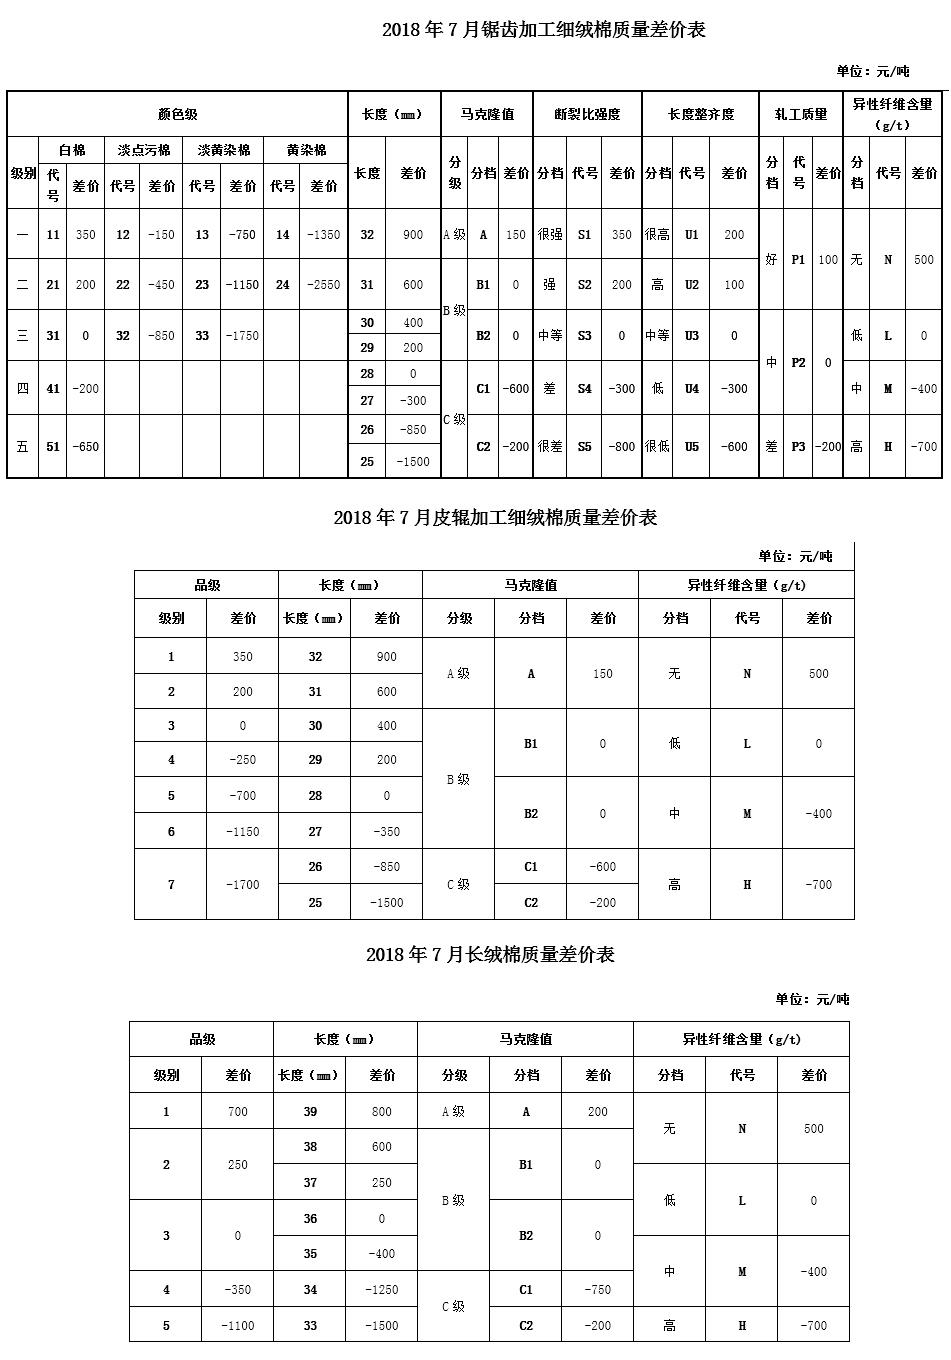 2018年7月中棉协《国产棉质量差价表》发布